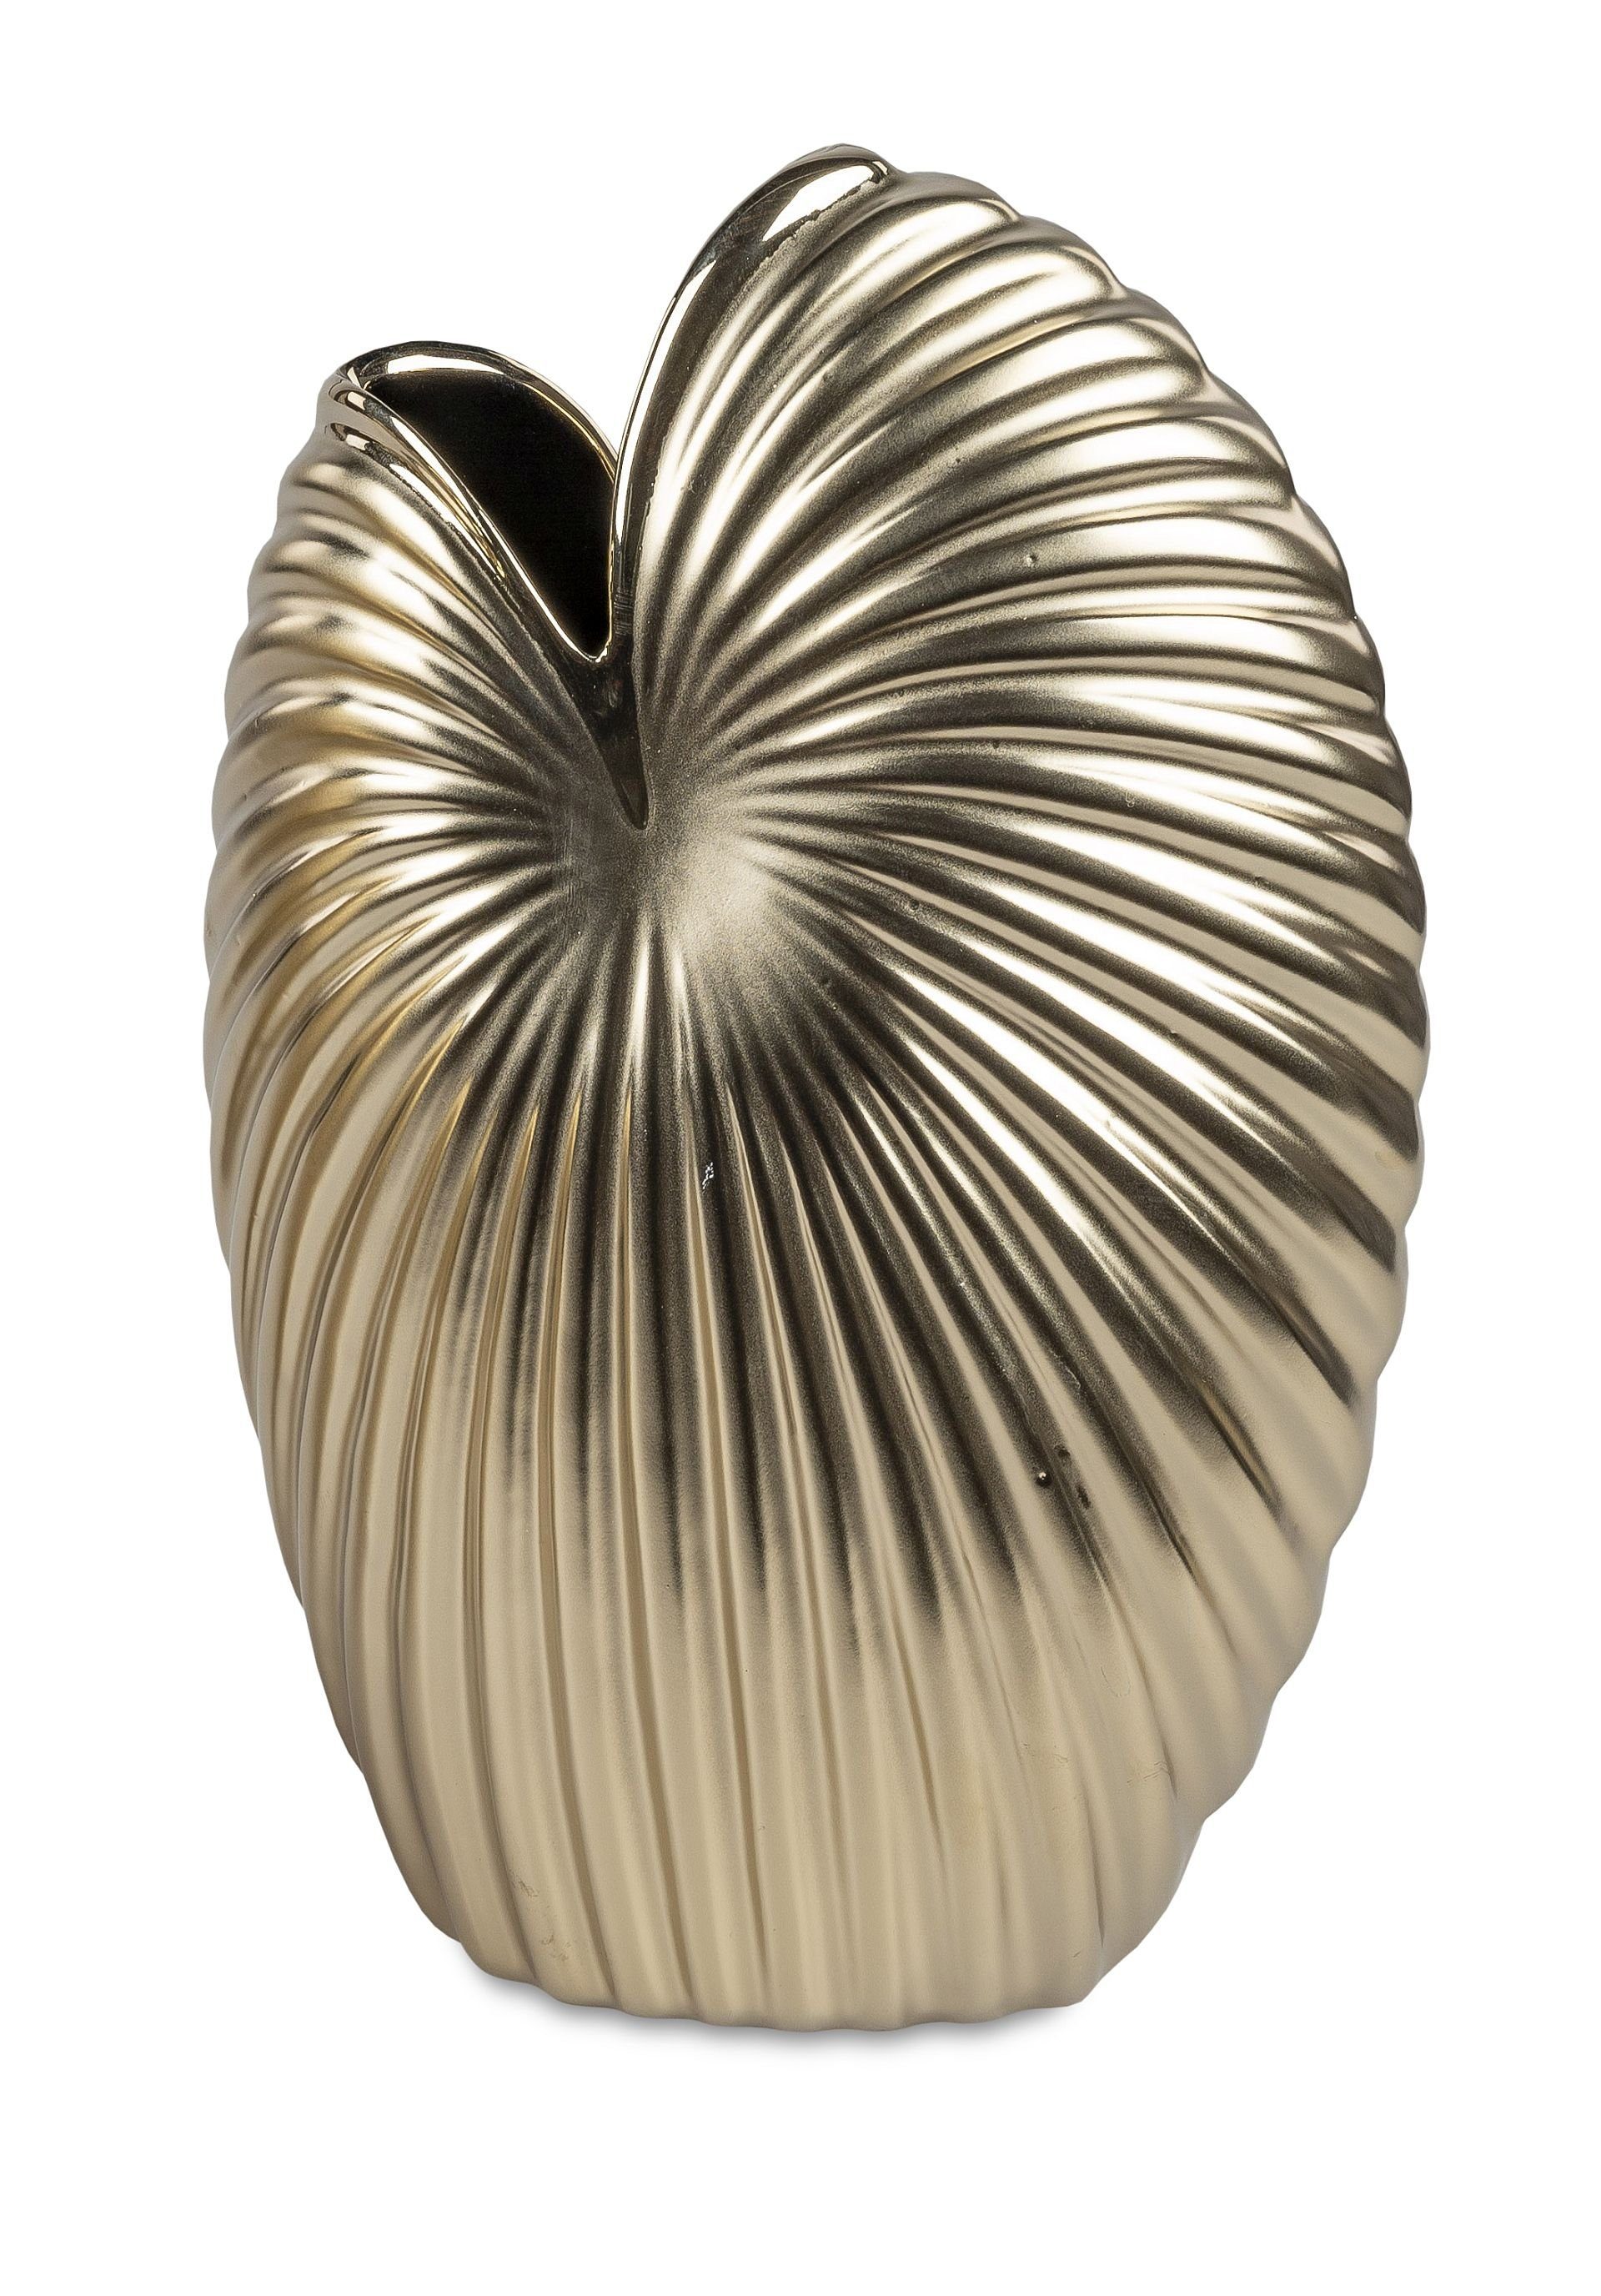 Small-Preis Dekovase Formano Vase Tischvase Gold rund wählbar, 3 matt Größen aus Keramik in